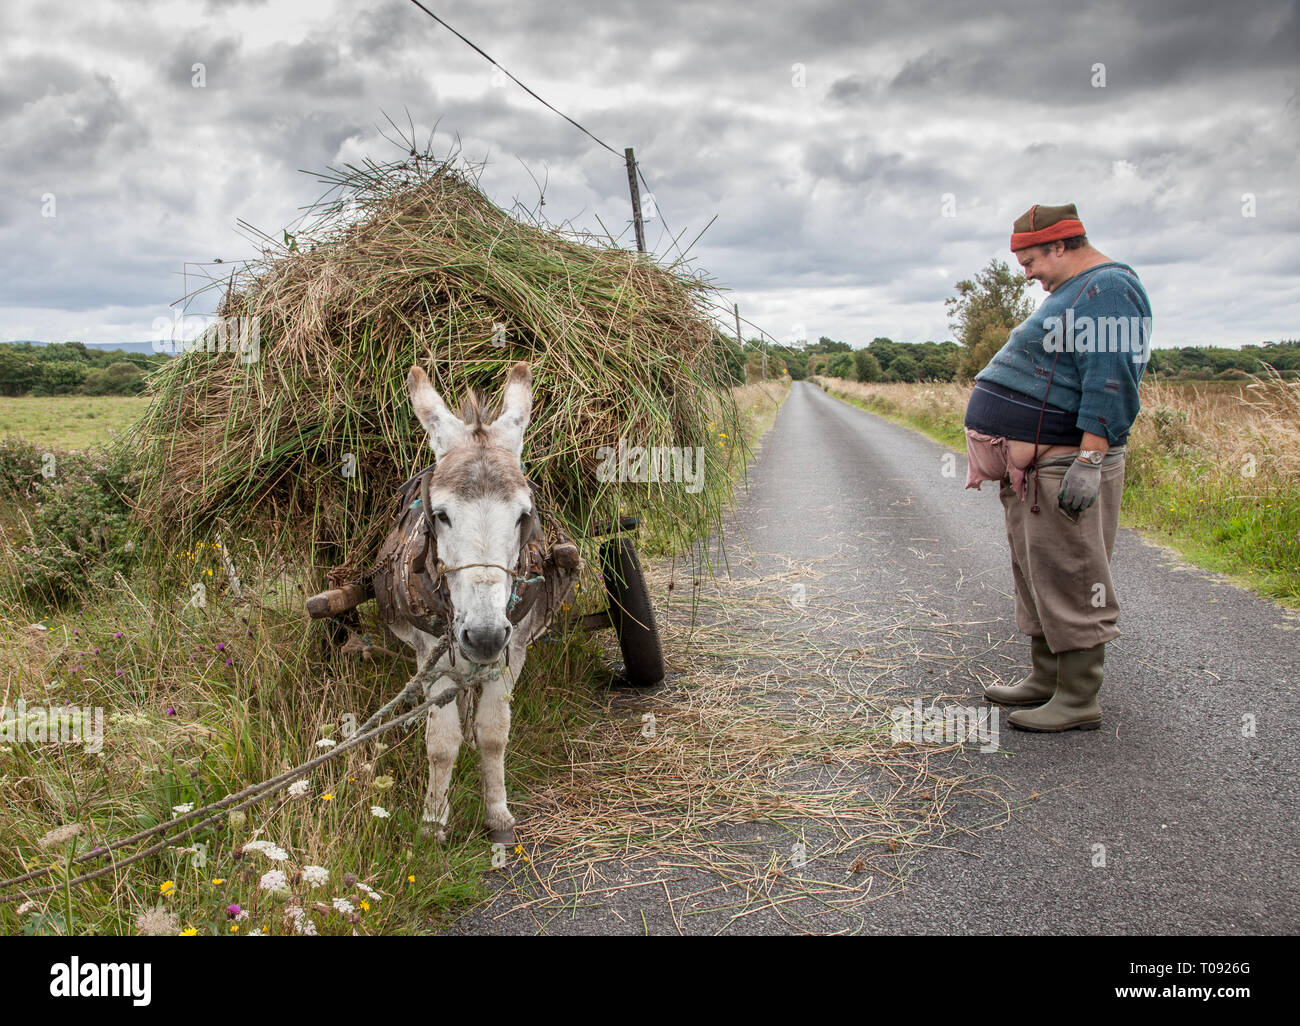 Enniscrone, Sligo, Irland. August 13, 2009. Ein Bauer bringt home Schilf mit diesem Esel und Warenkorb in Enniscrone, Co Sligo Irland Stockfoto